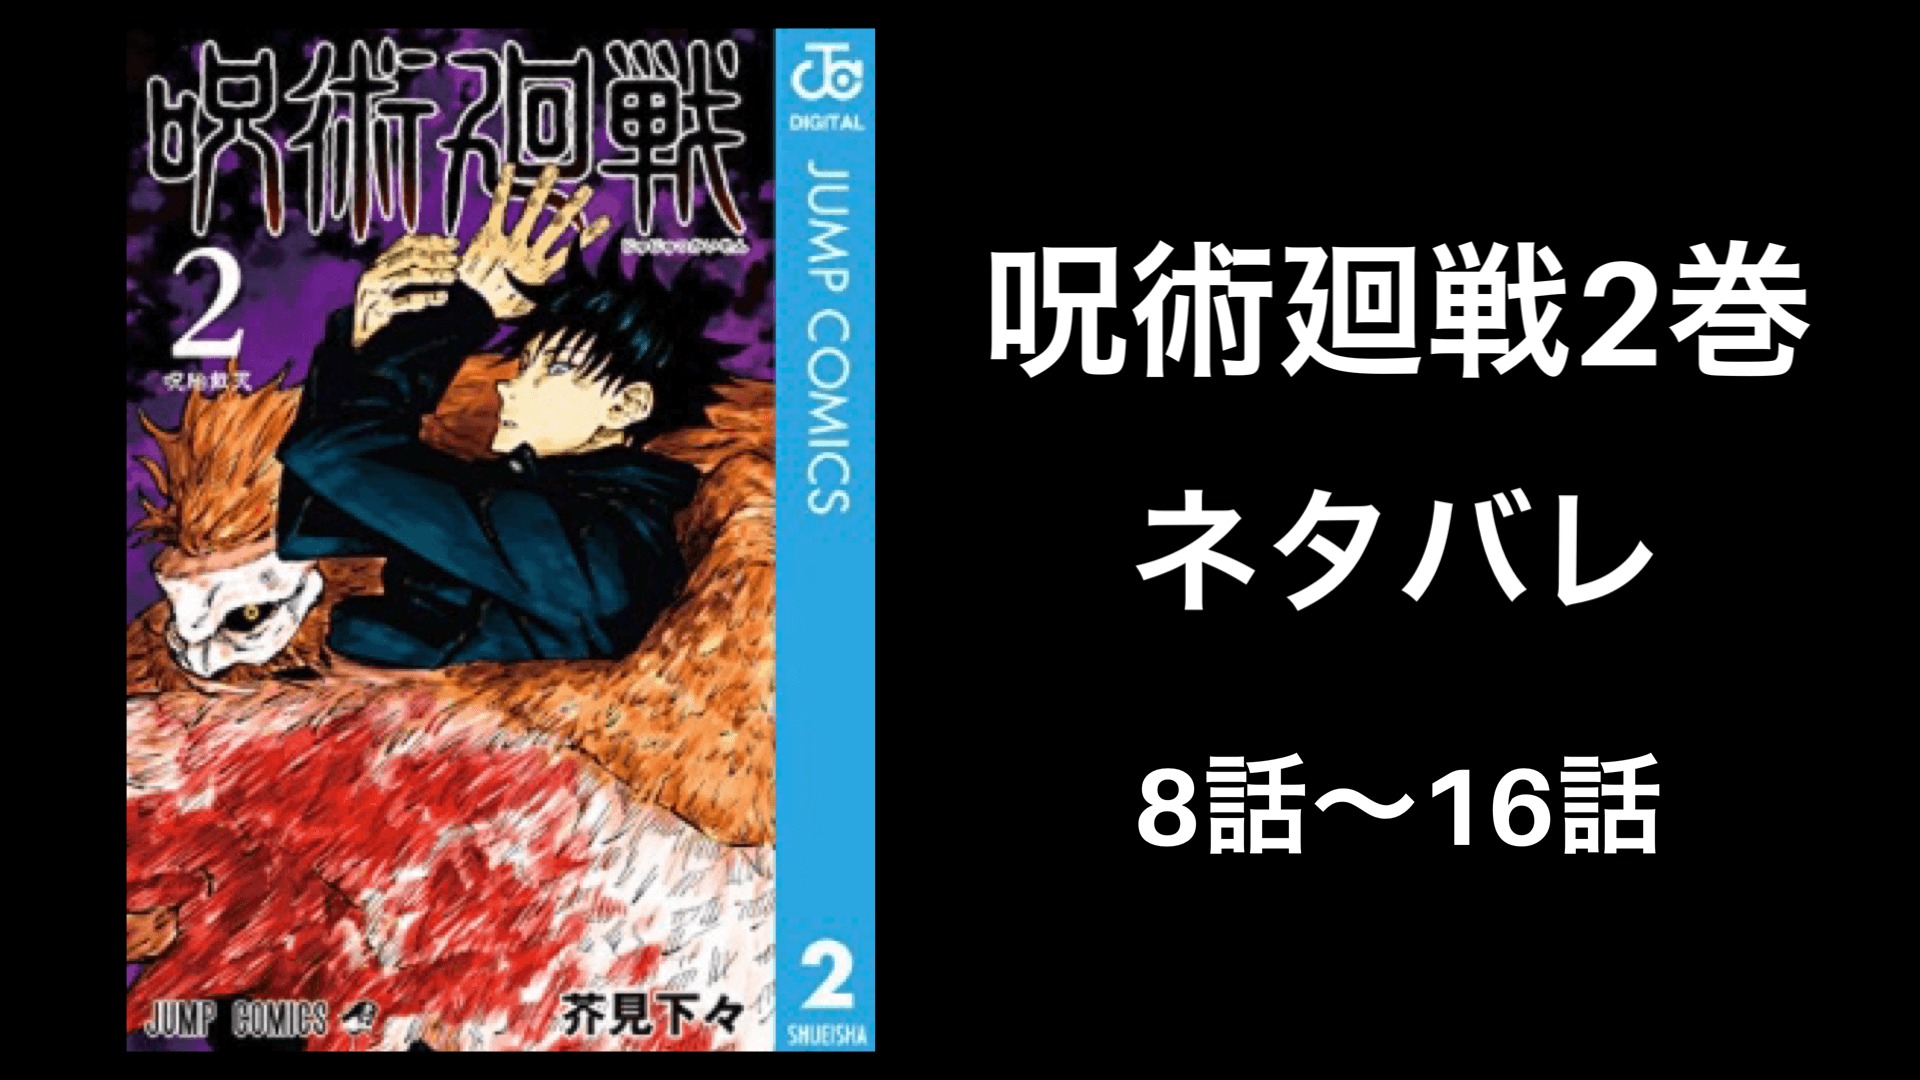 呪術廻戦第2巻完全ネタバレ 8話から16話を一挙紹介 最新版 しゅみかつ